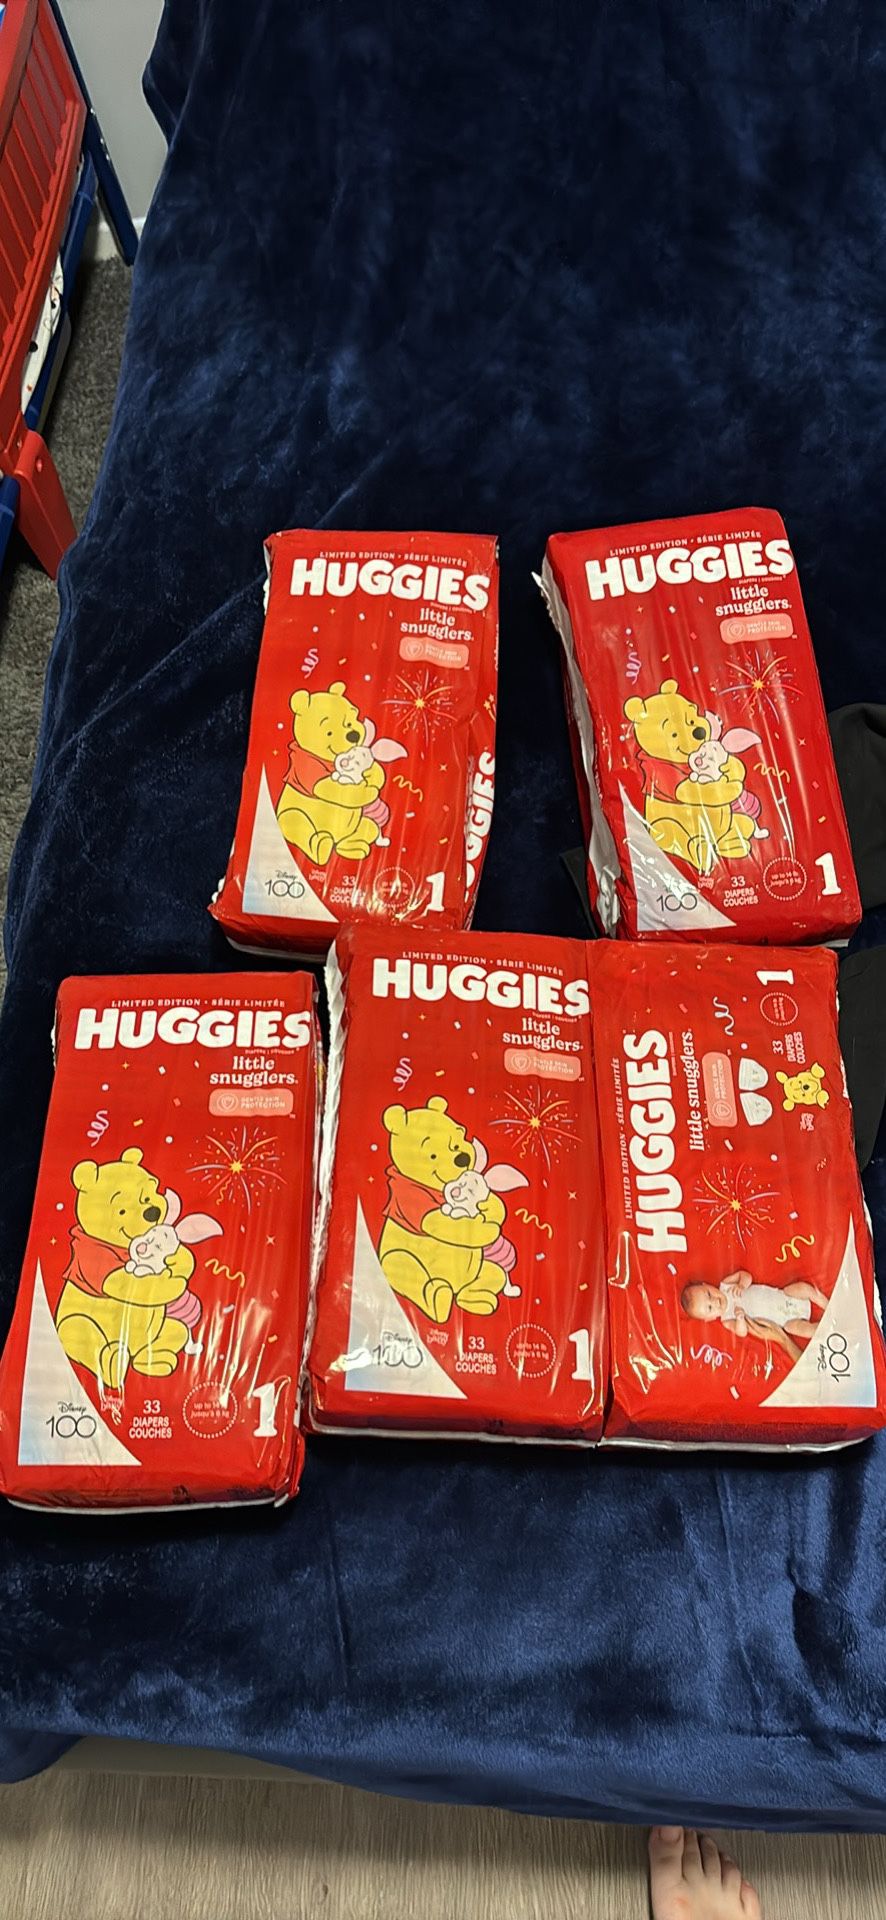 165 Huggies Diapers 